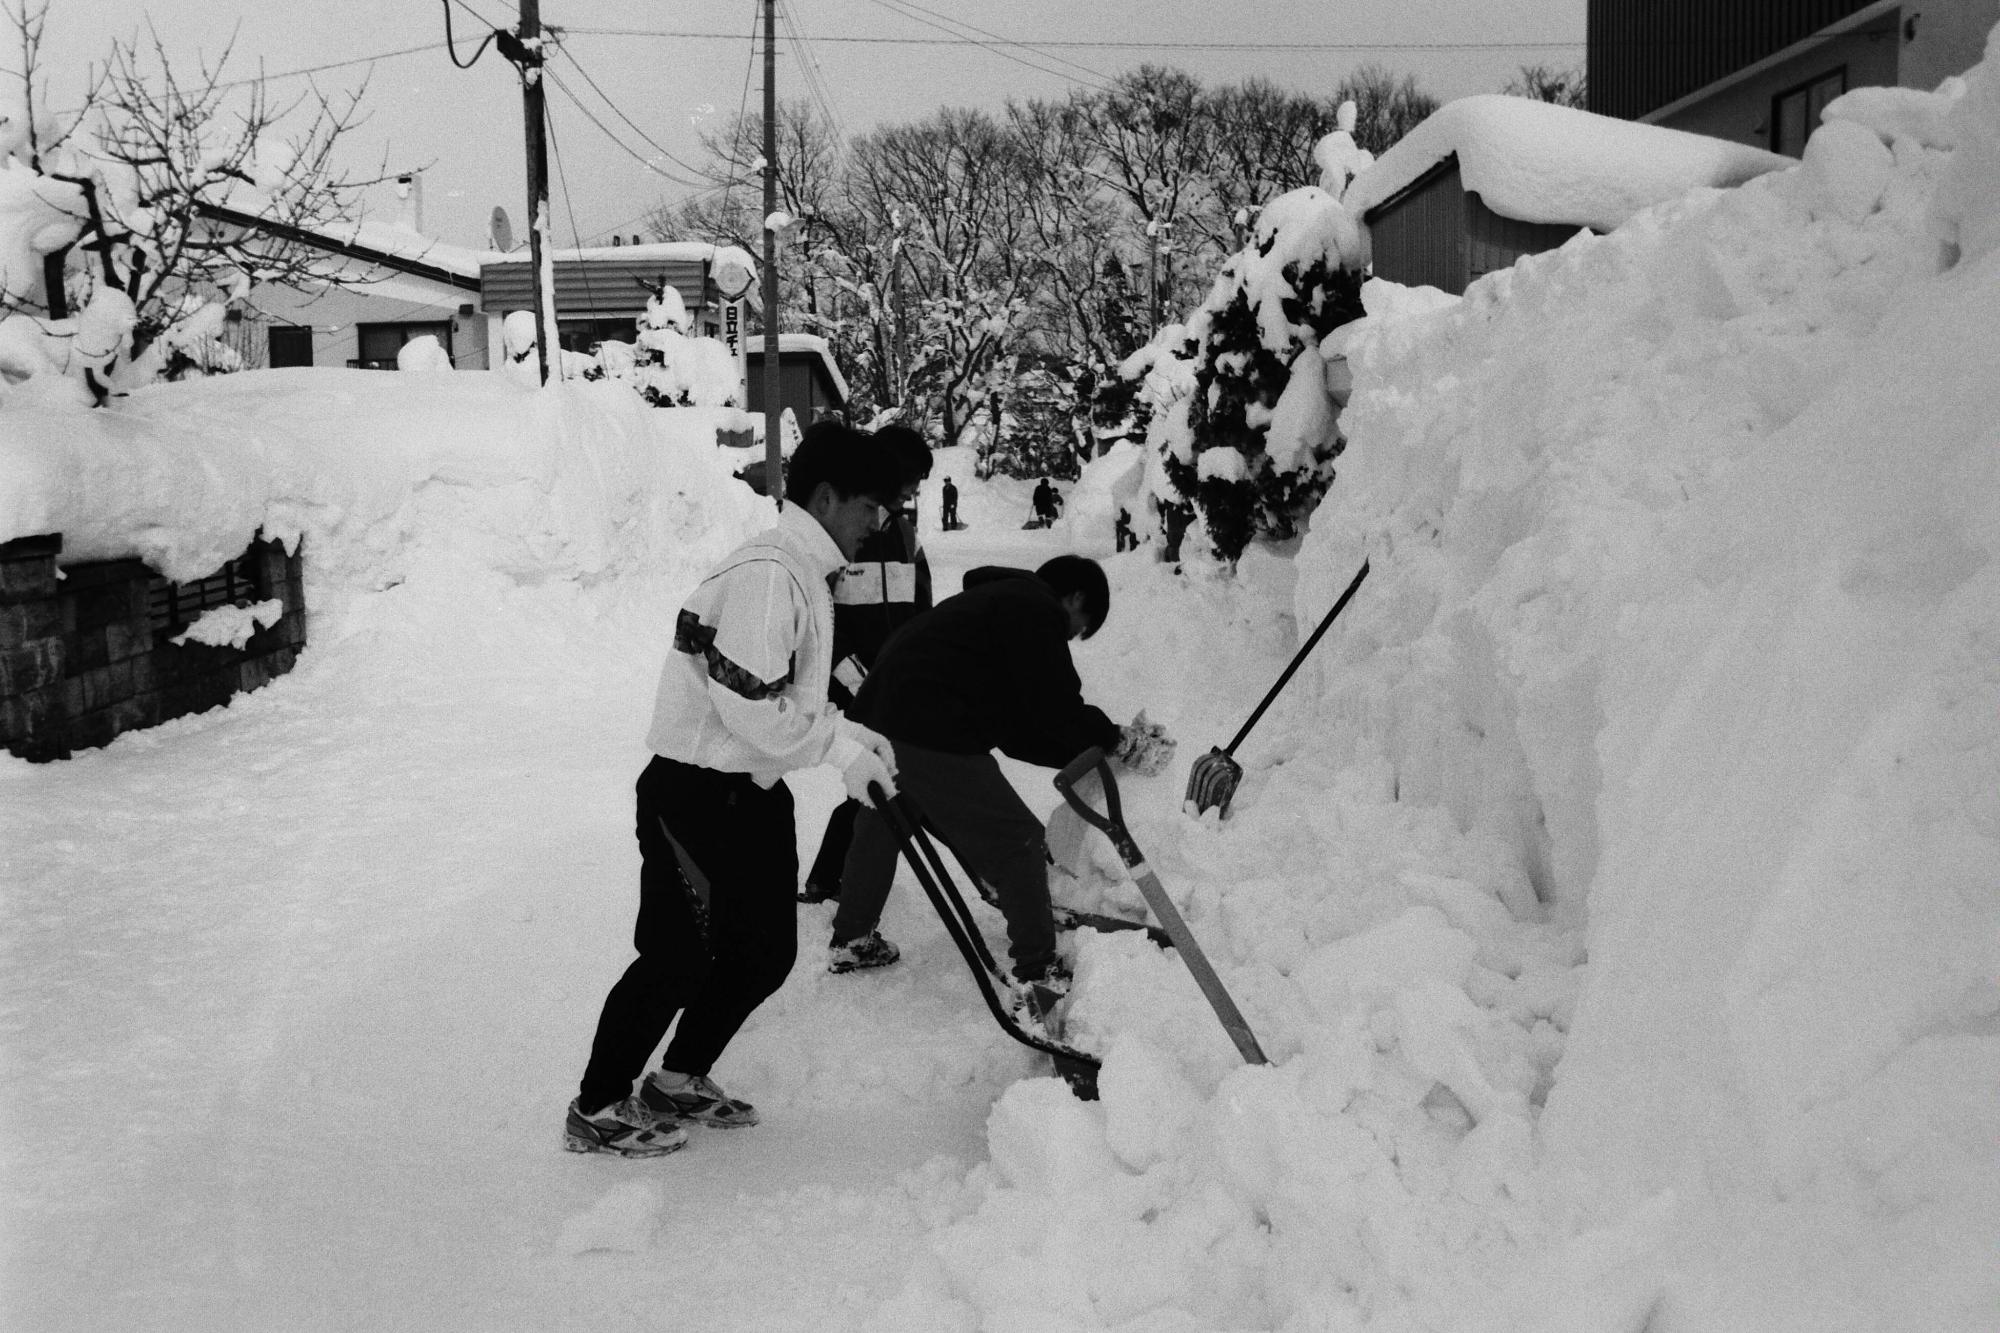 身長より高く積もった通路わきの雪の除雪をしている高校生のボランティア除雪の様子が写った写真